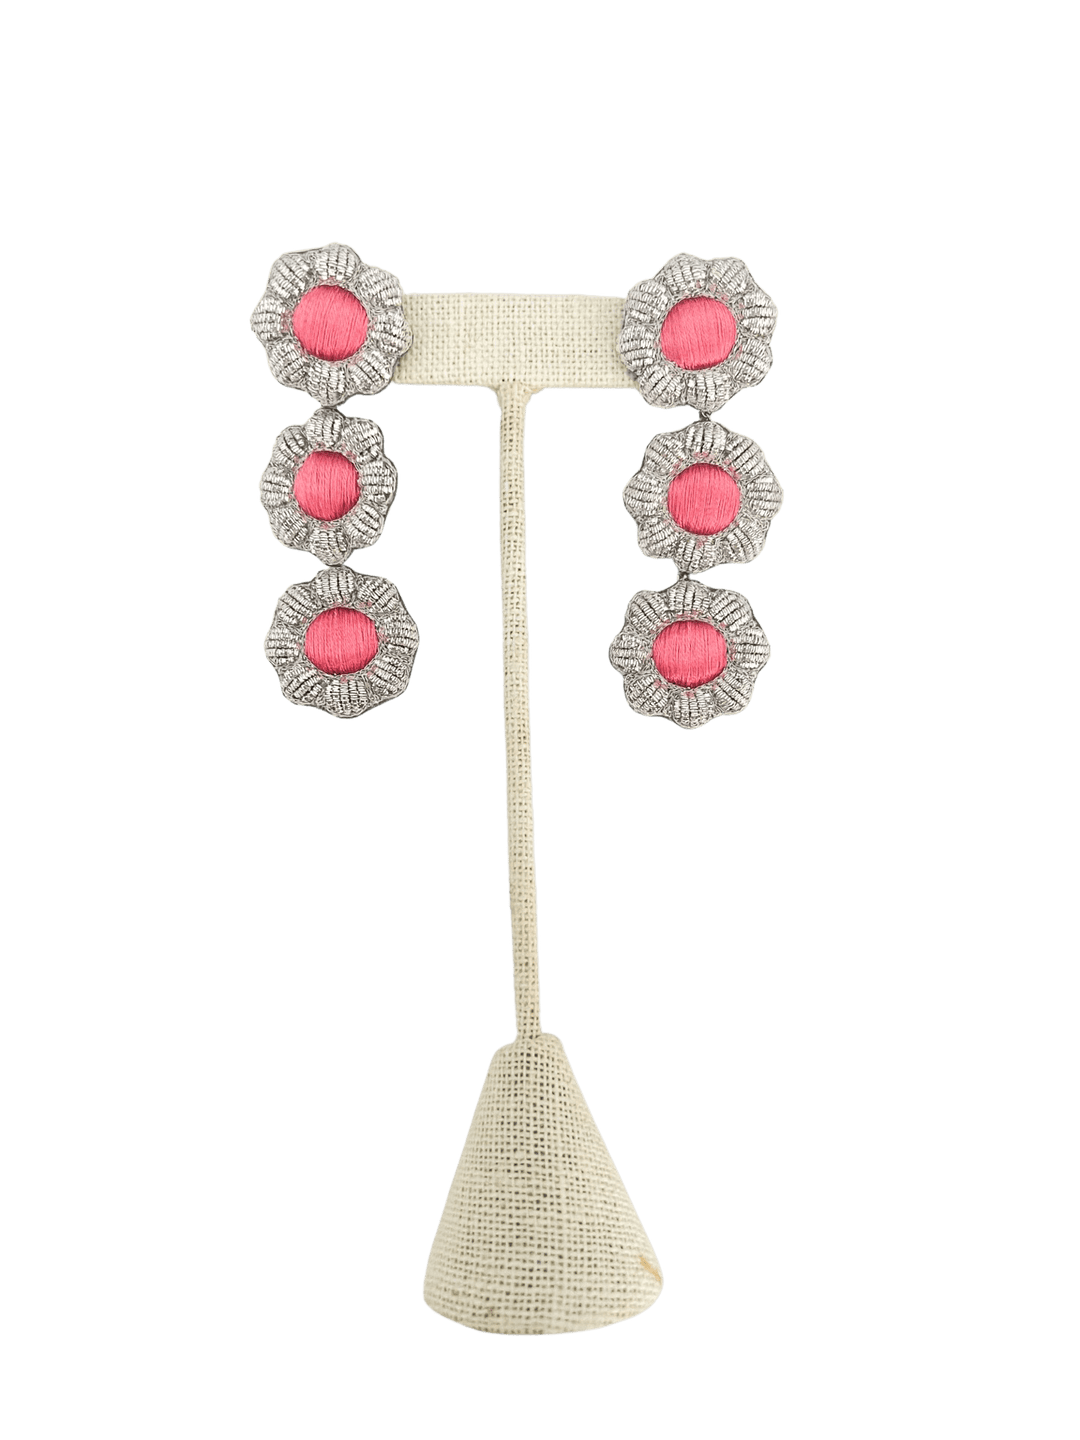 Sophia203 Jewelry Watermelon Pink Sophia 203 Jewelry | Floral Gem Earrings